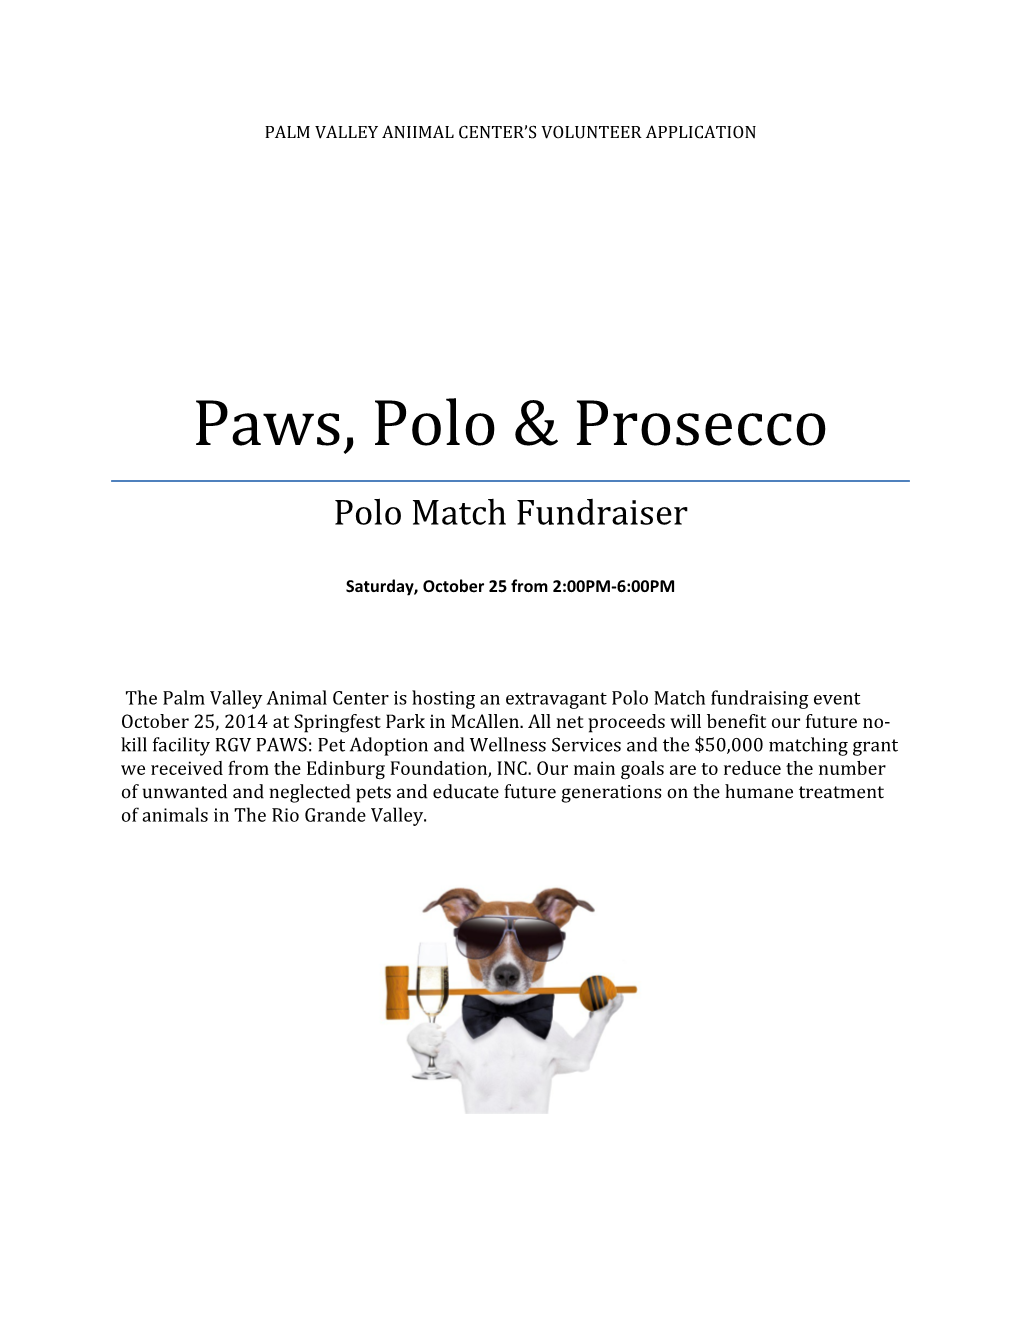 Paws, Polo & Prosecco